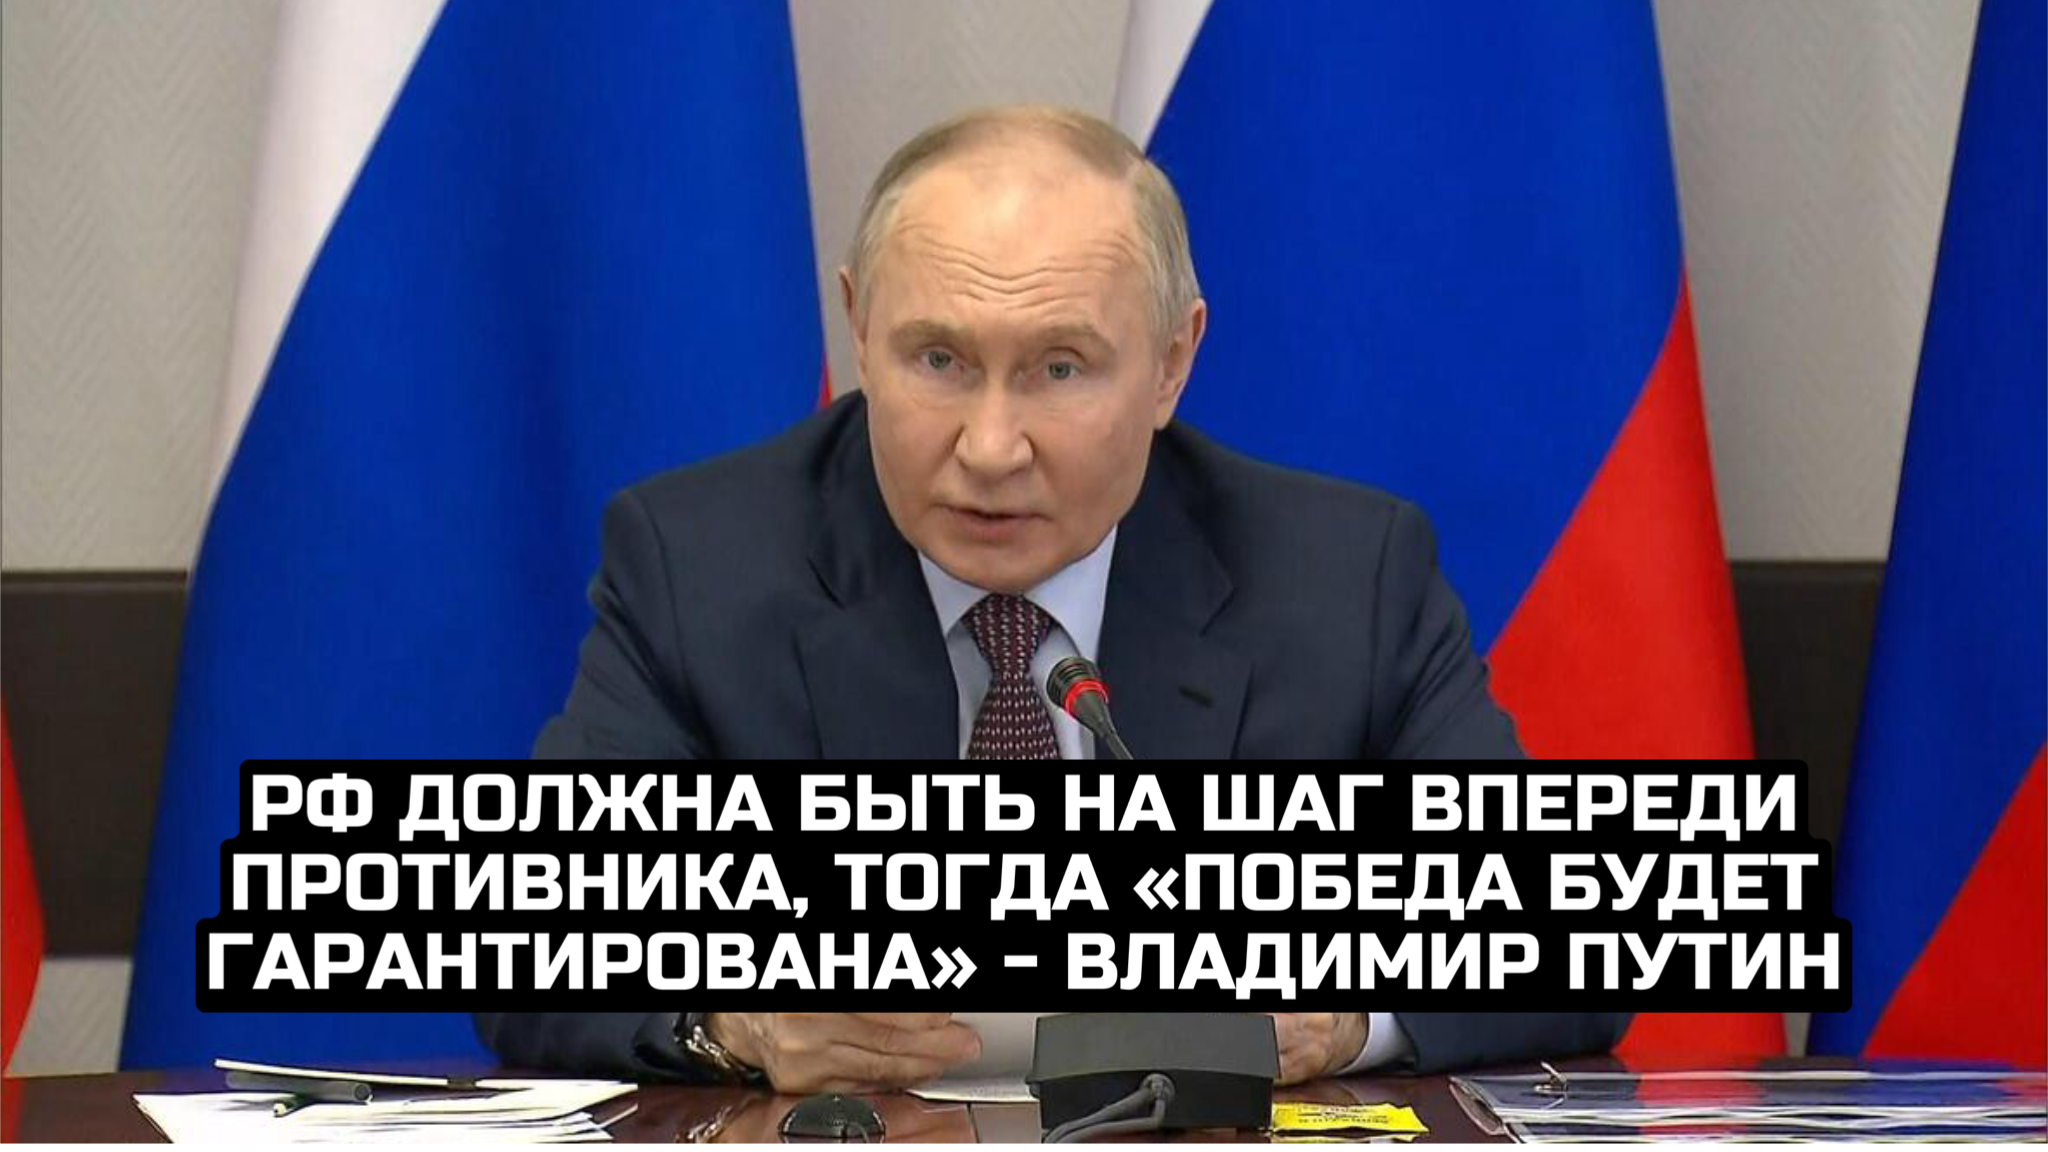 РФ должна быть на шаг впереди противника, тогда «победа будет гарантирована» - Владимир Путин